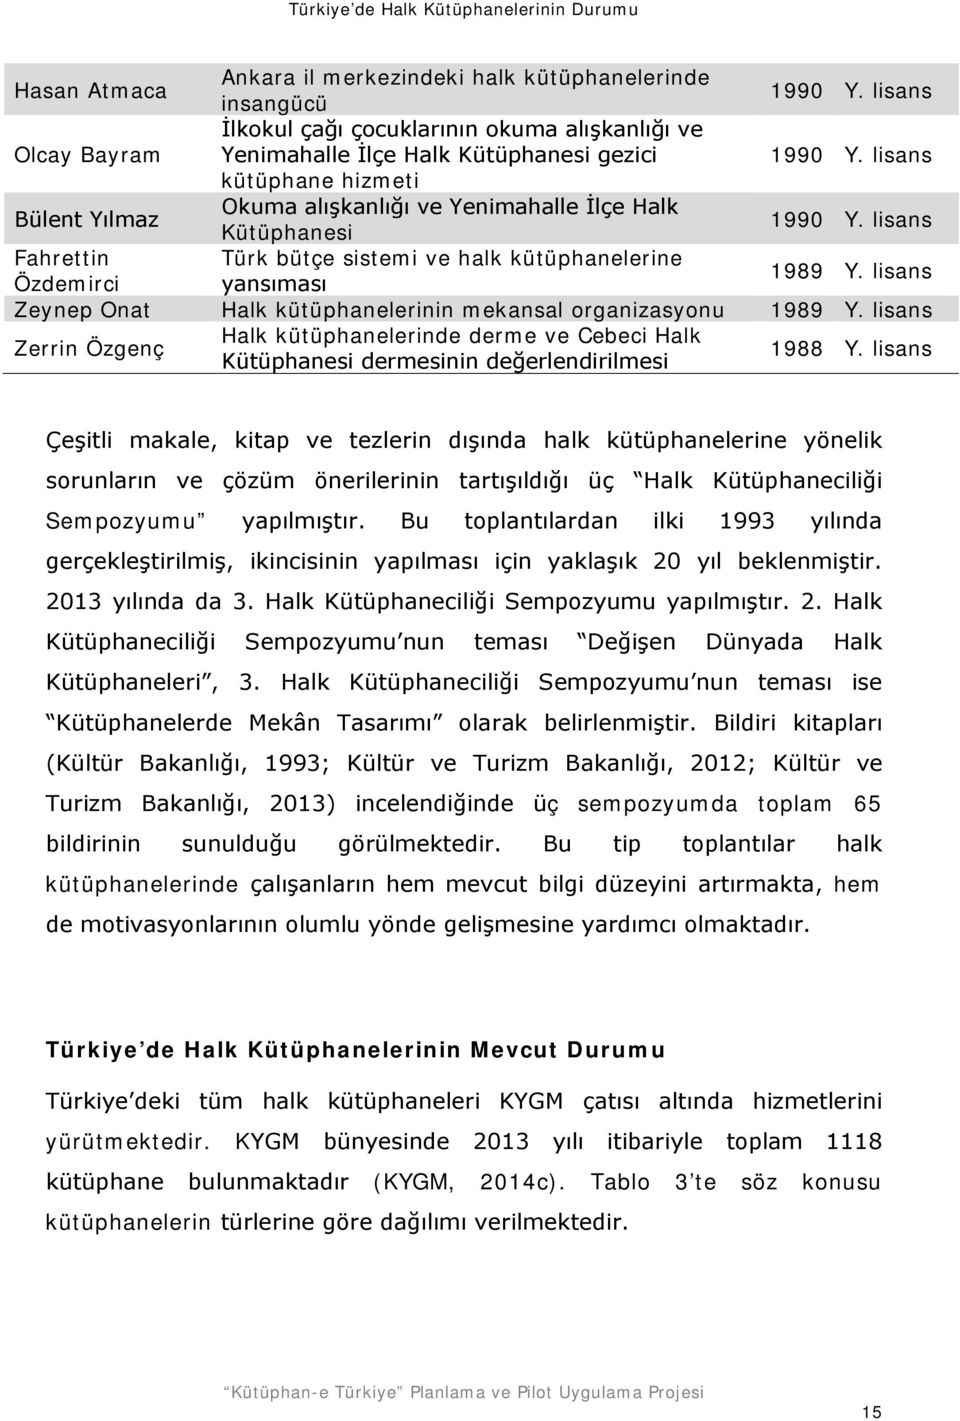 lisans Zeynep Onat Halk kütüphanelerinin mekansal organizasyonu 1989 Y. lisans Zerrin Özgenç Halk kütüphanelerinde derme ve Cebeci Halk Kütüphanesi dermesinin değerlendirilmesi 1988 Y.